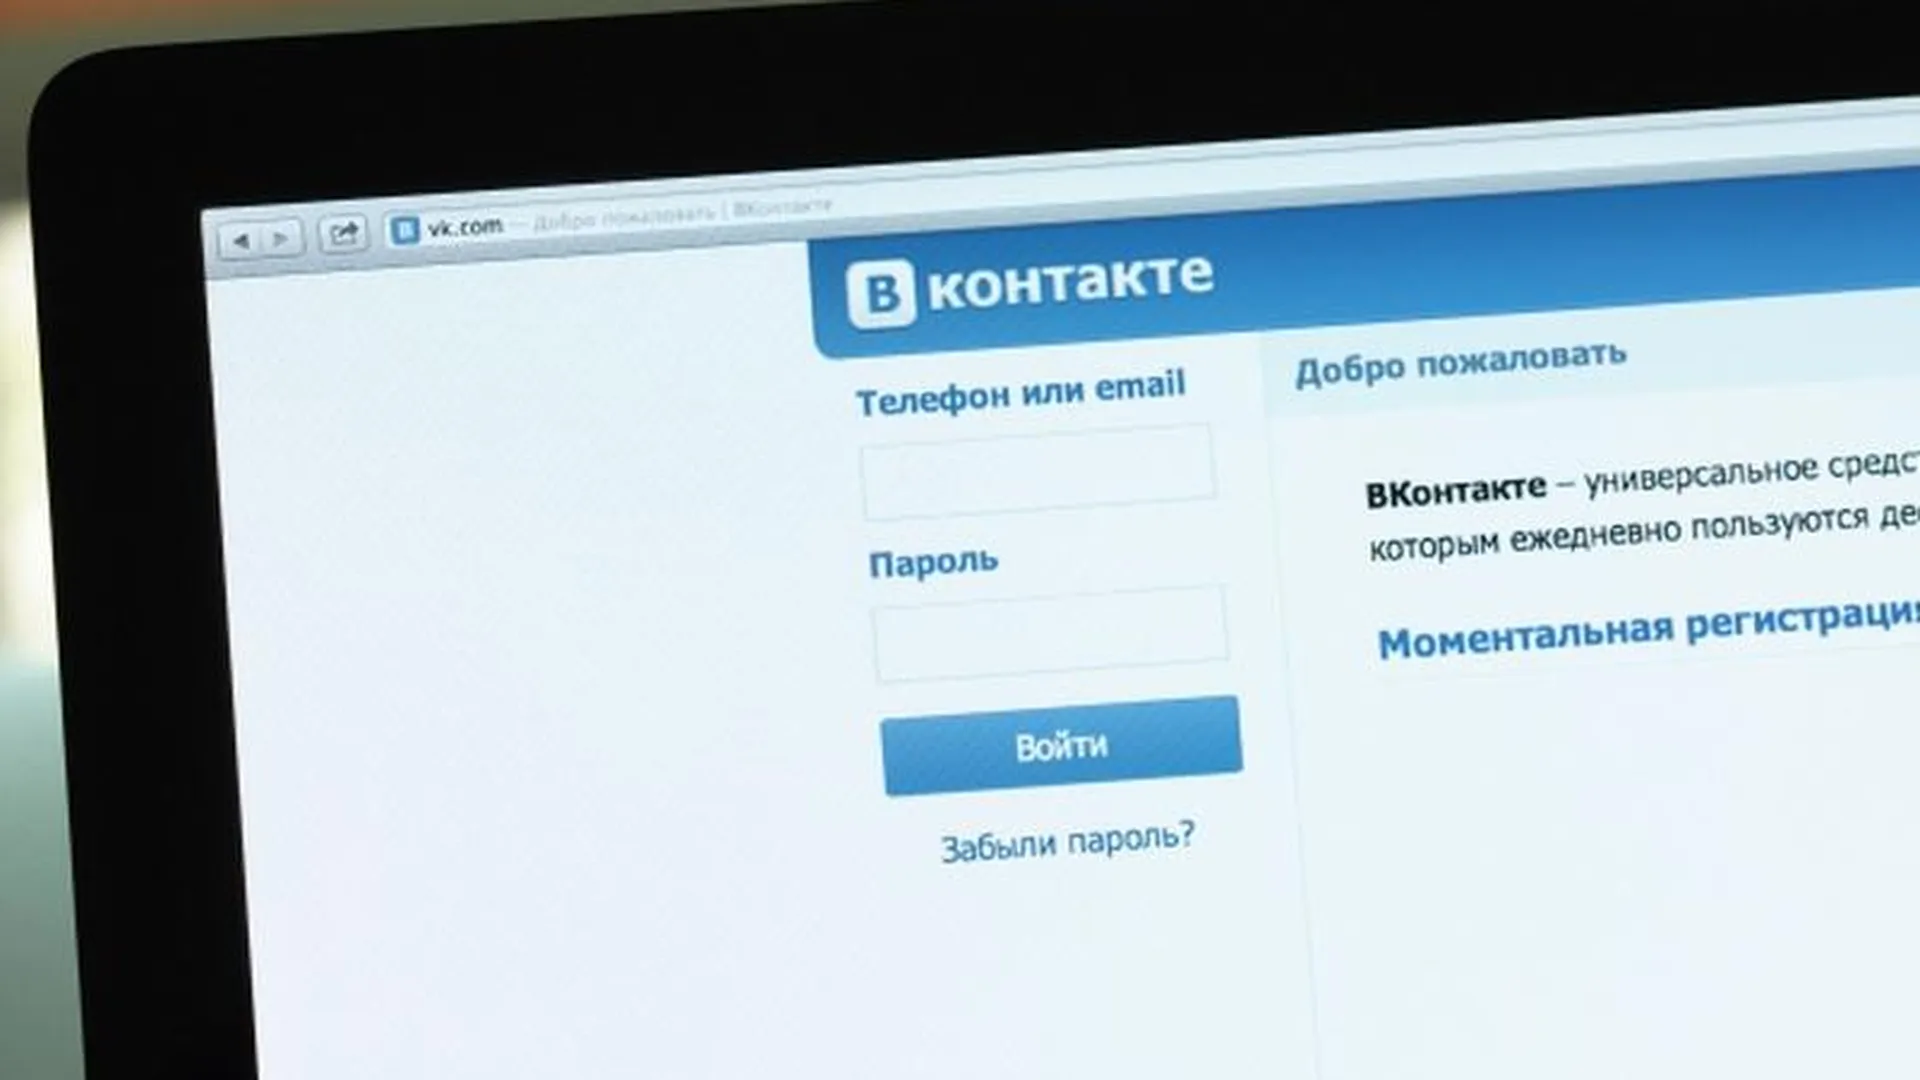 Мониторить опасные группы «ВКонтакте» начнут профессиональные психологи